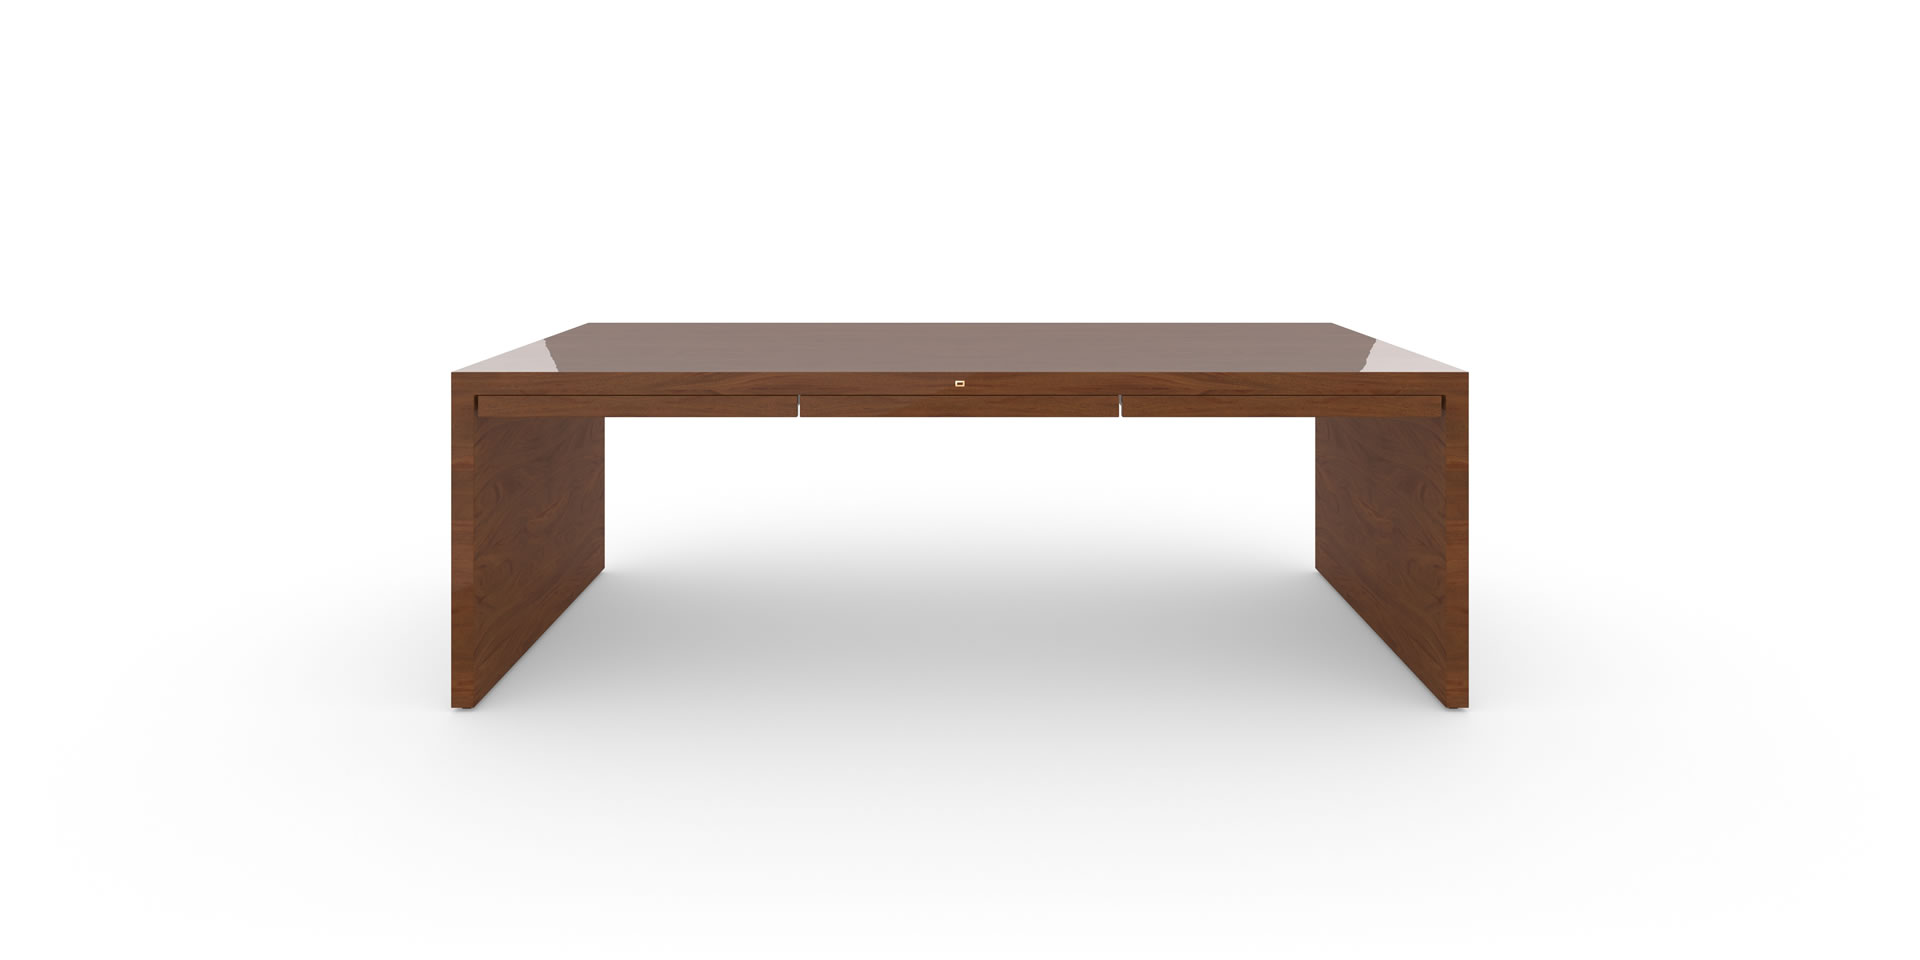 Design-Tisch mit Schubladen, Mahagoni Edelholz - FELIX SCHWAKE